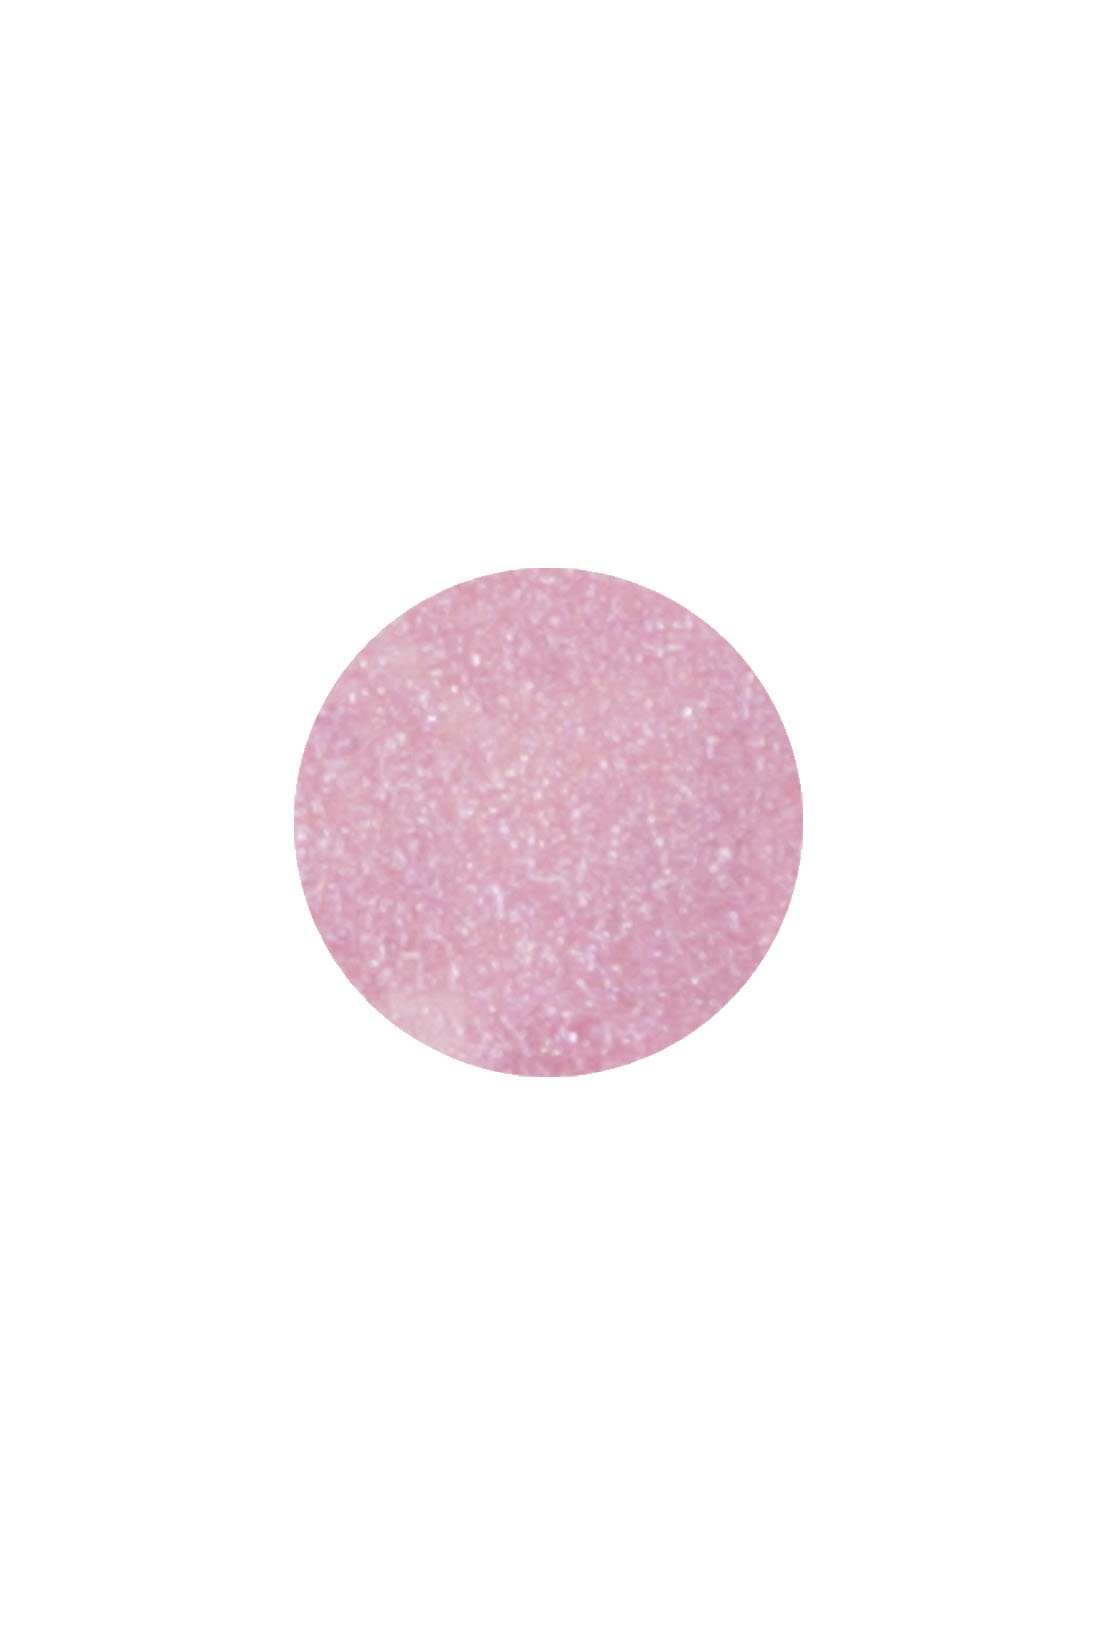  Dot of Lasting FAIRY PINK Color Eyeliner (Waterproof)